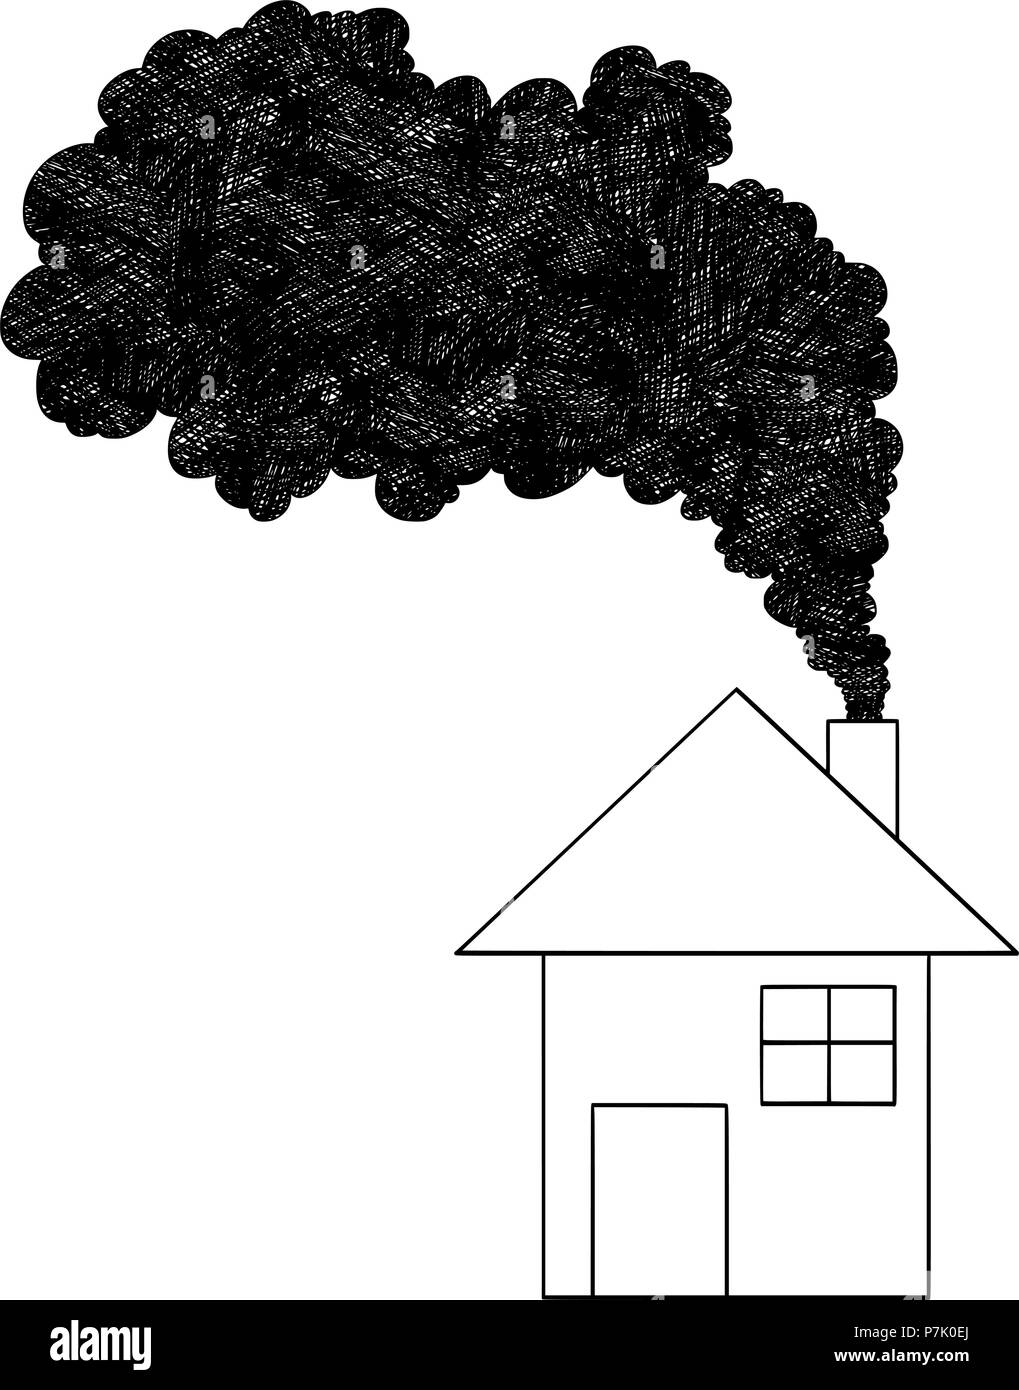 Dessin Artistique vecteur Illustration de la cheminée de fumée provenant de la pollution de l'air, Concept Illustration de Vecteur